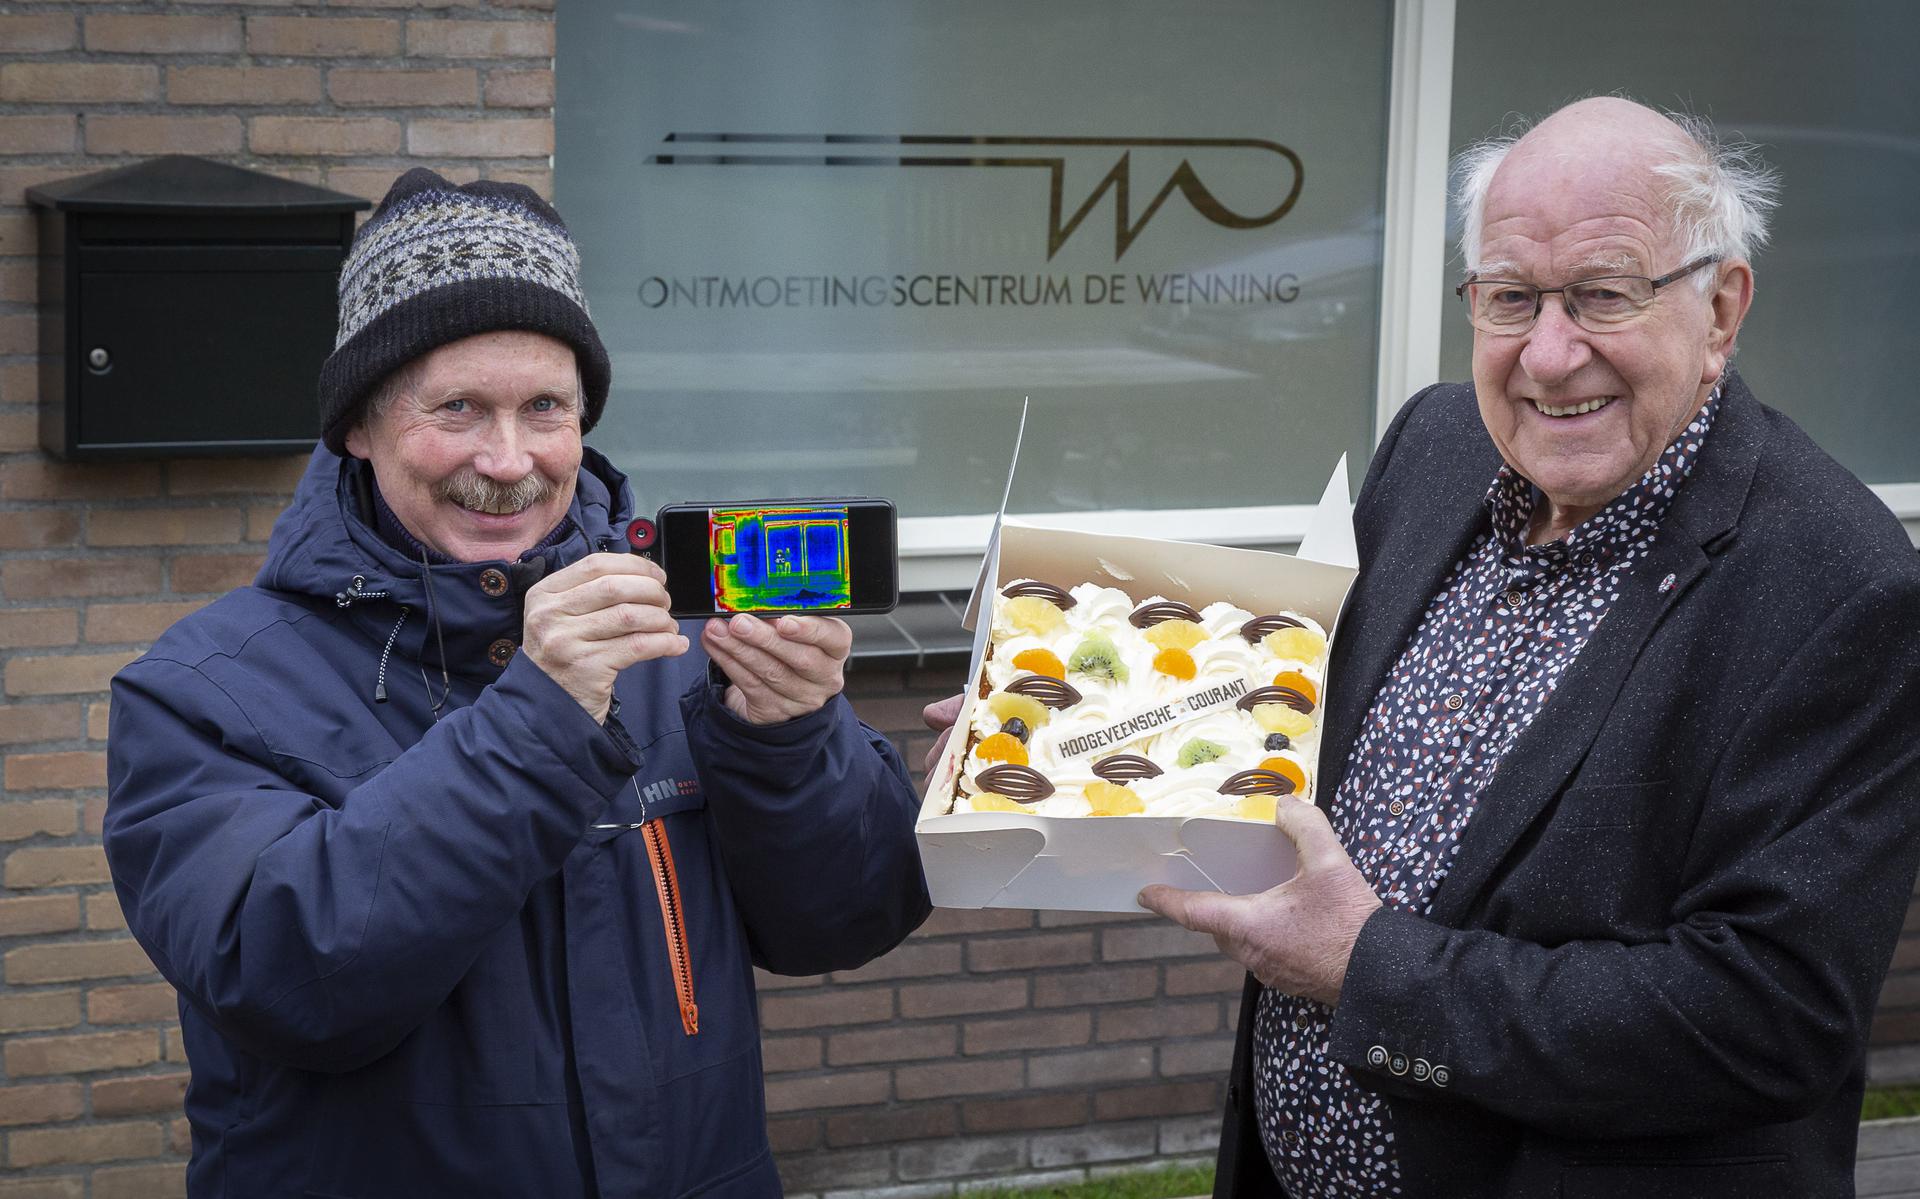 Taart voor de organisatie van Pesse Energie Neutraal. Bert Buiten (links) en Bert Willigenburg nemen de taart in ontvangst.